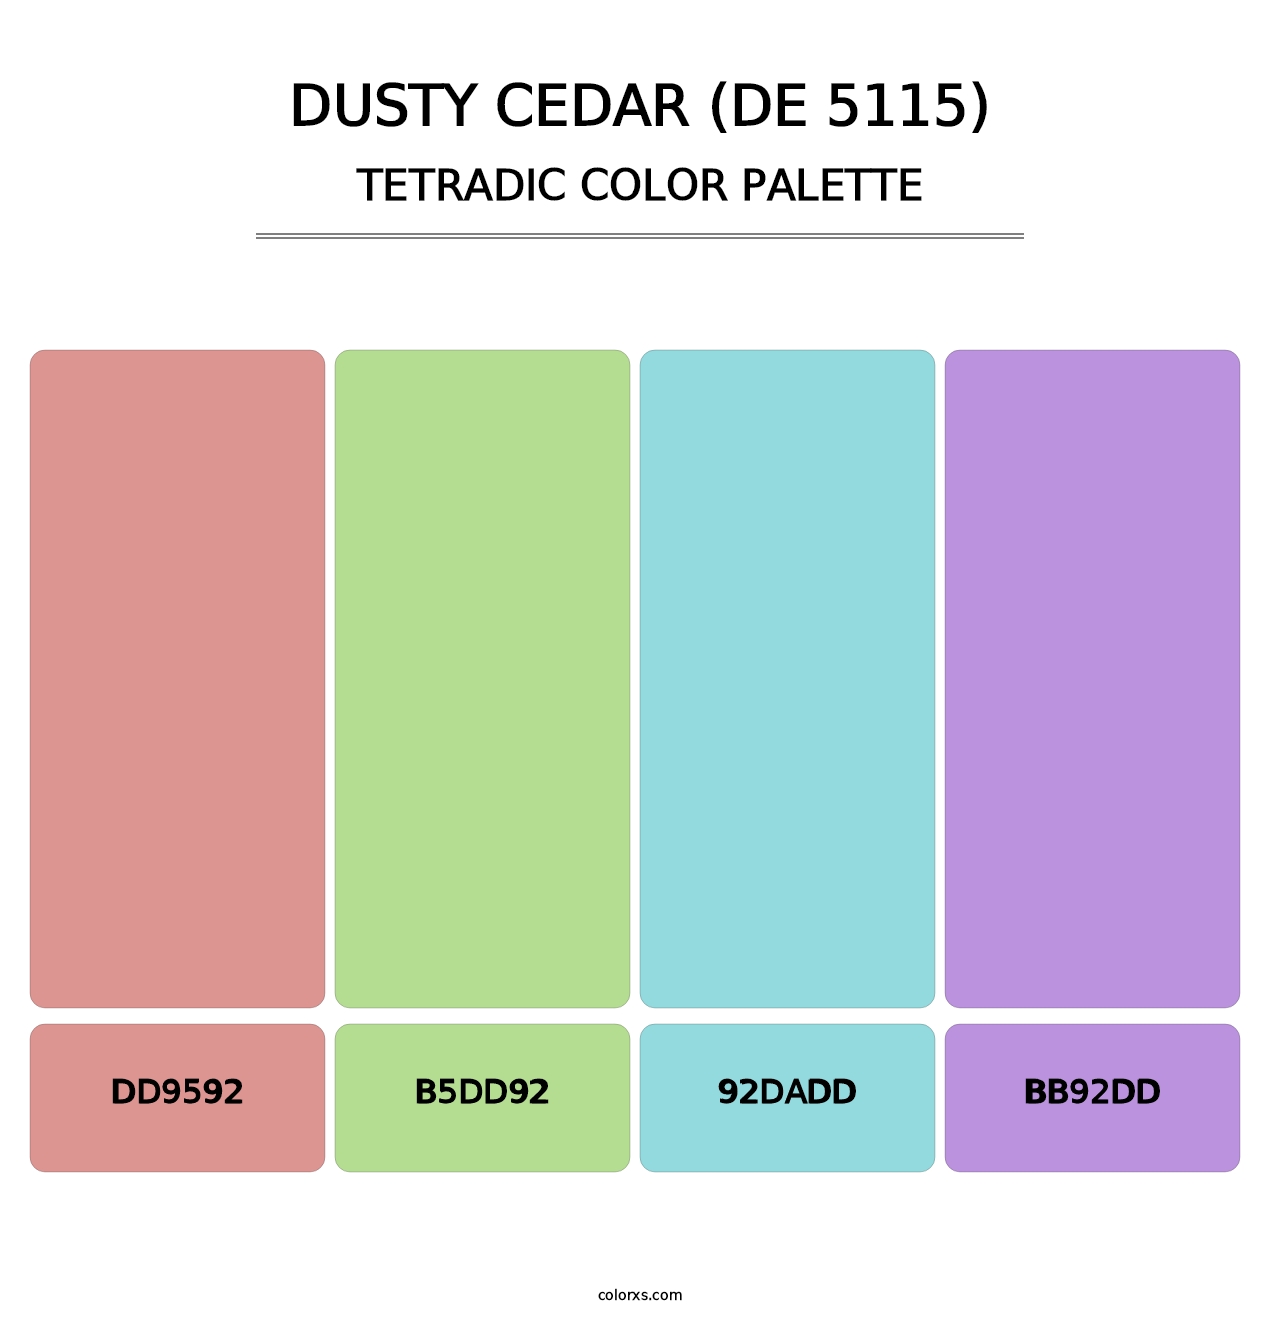 Dusty Cedar (DE 5115) - Tetradic Color Palette